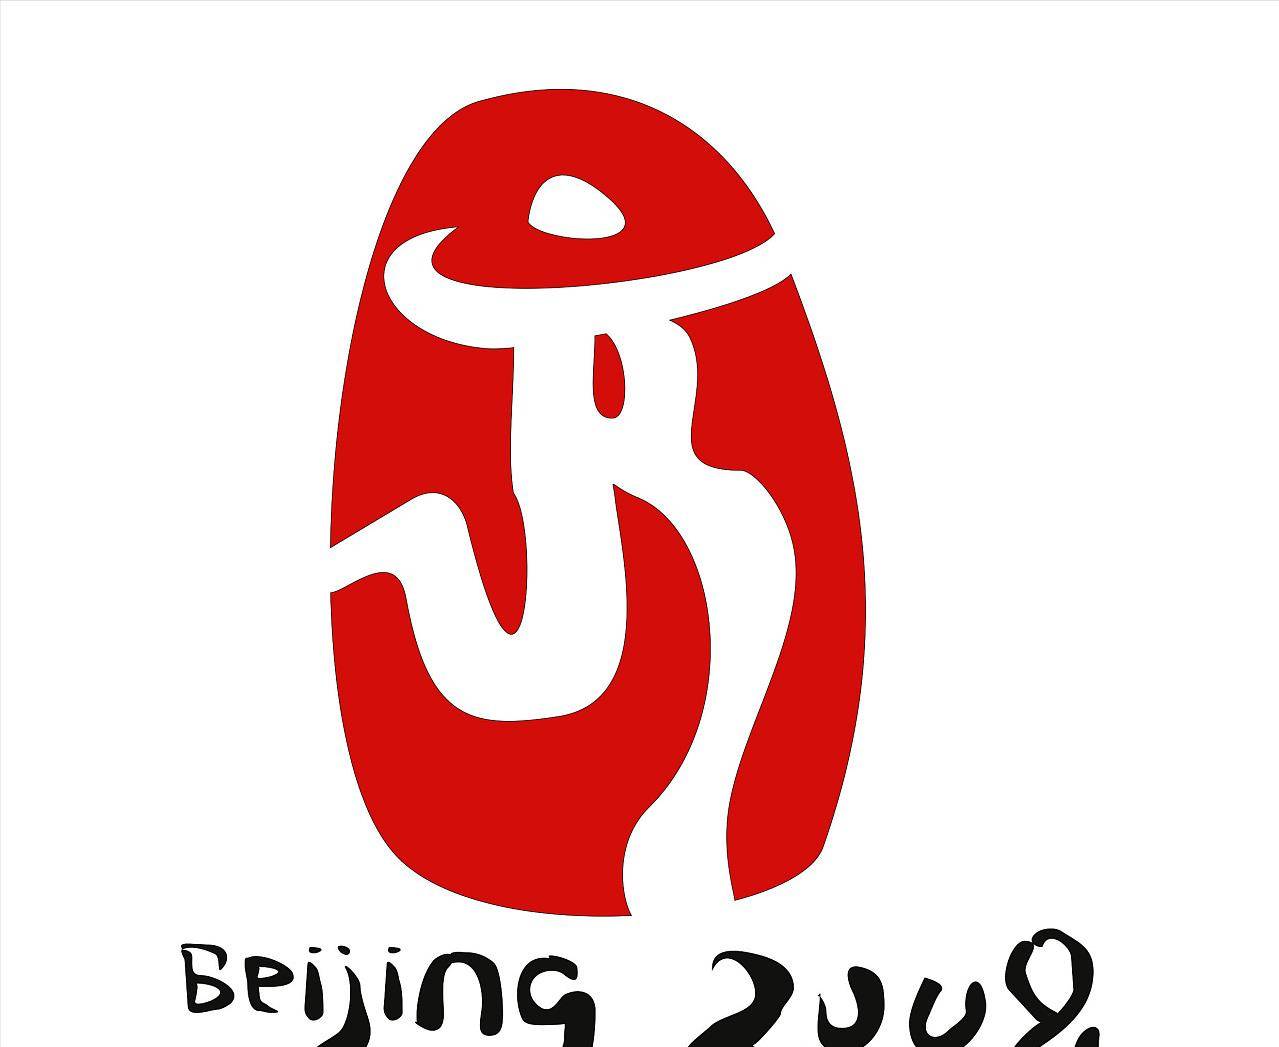 北京夏季奥运会会徽图片